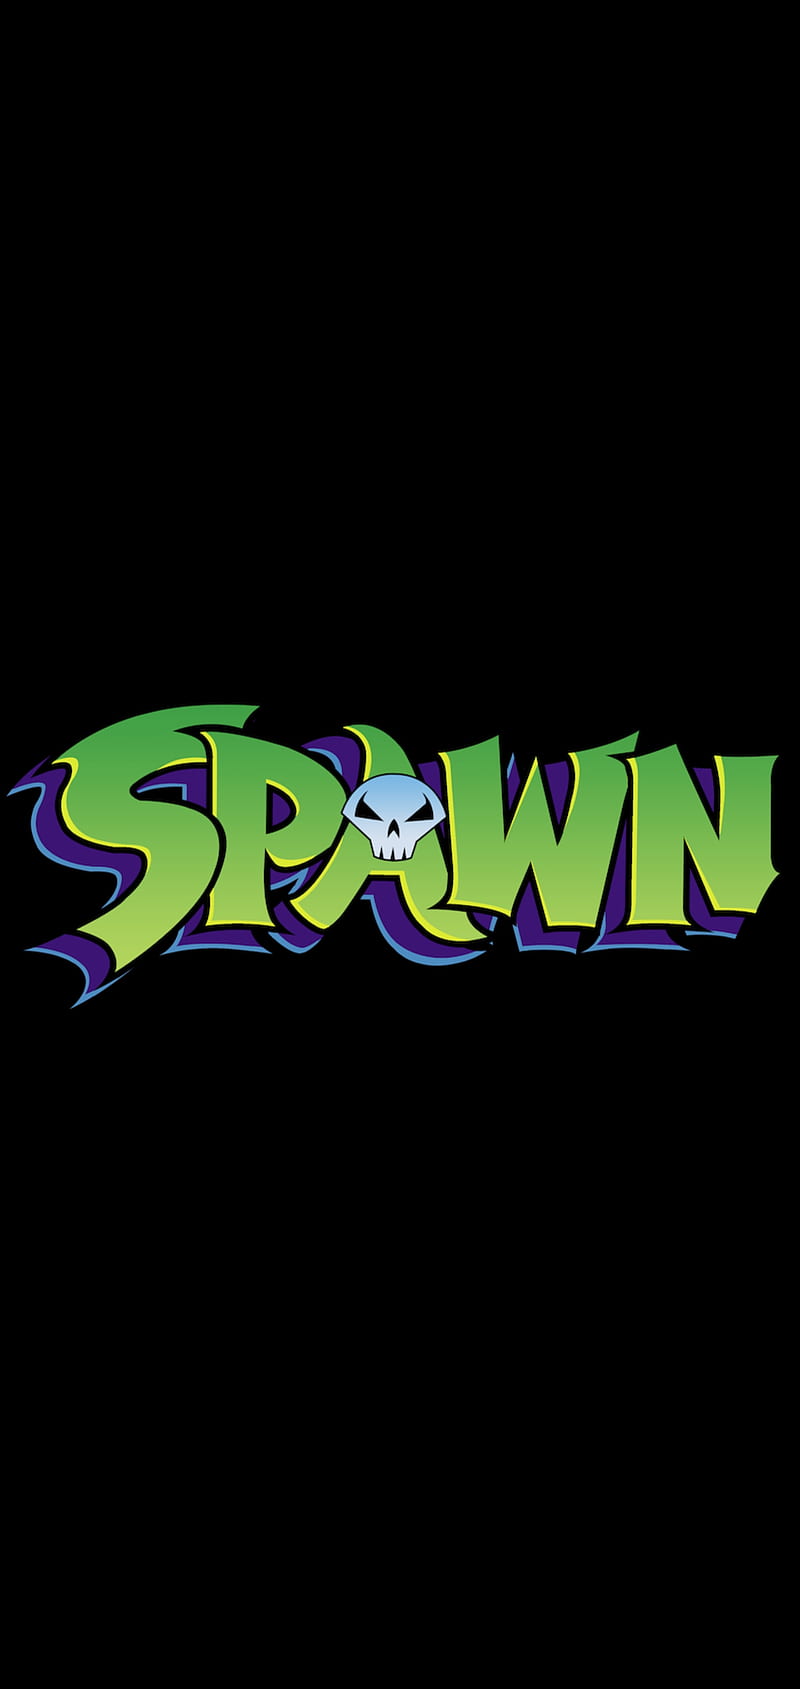 spawn logo wallpaper hd